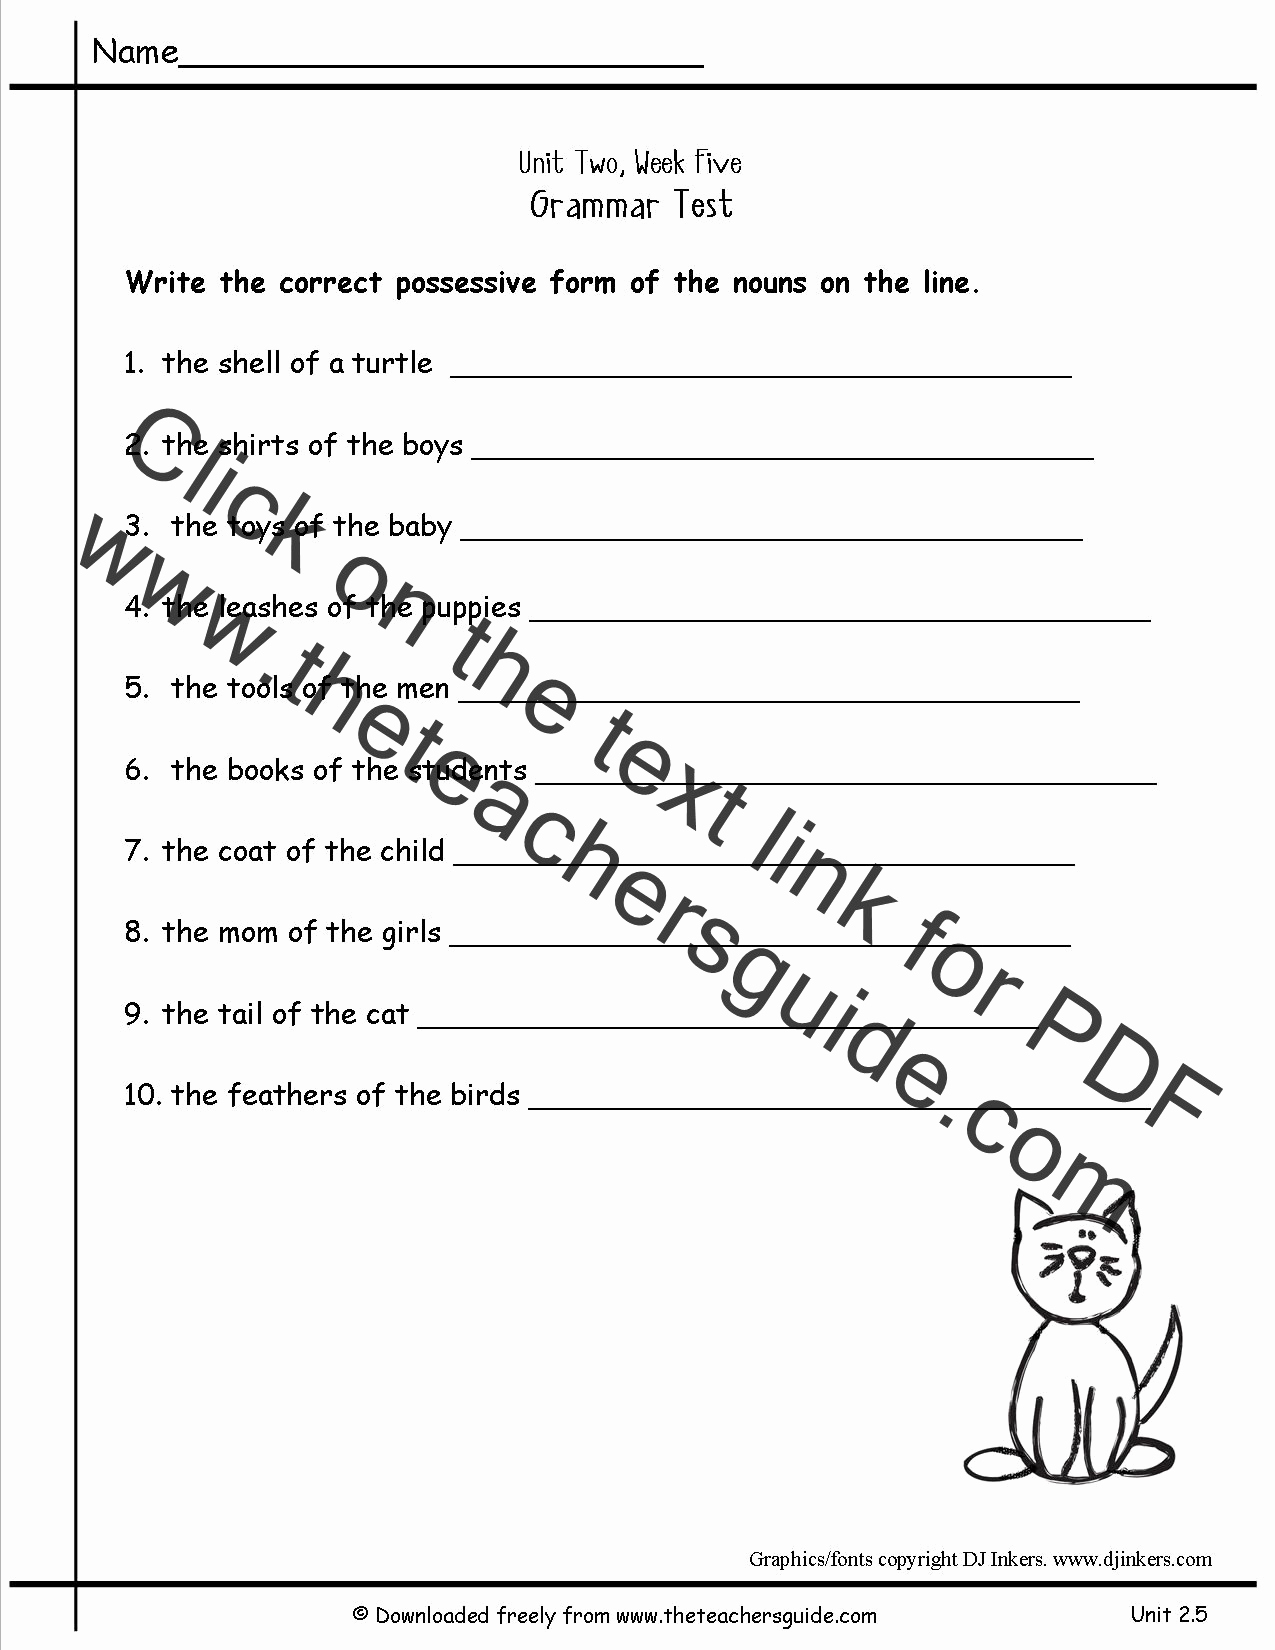 Possessive Pronouns Worksheet 3rd Grade Best Of 20 Possessive Pronouns Worksheet 3rd Grade